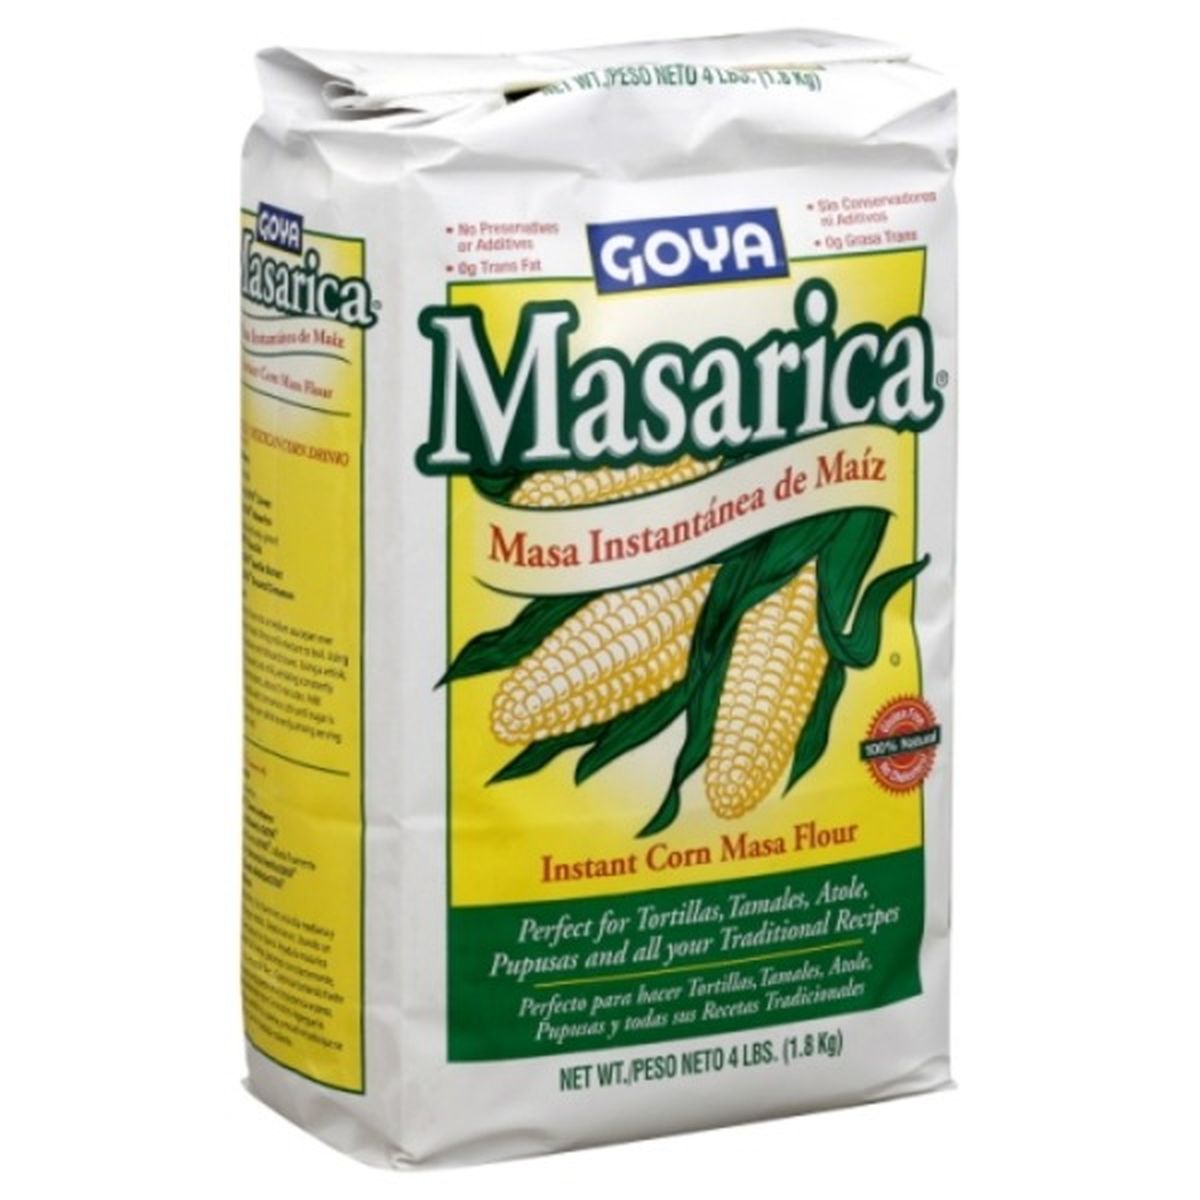 Calories in Goya Corn Masa Flour, Instant, Masarica